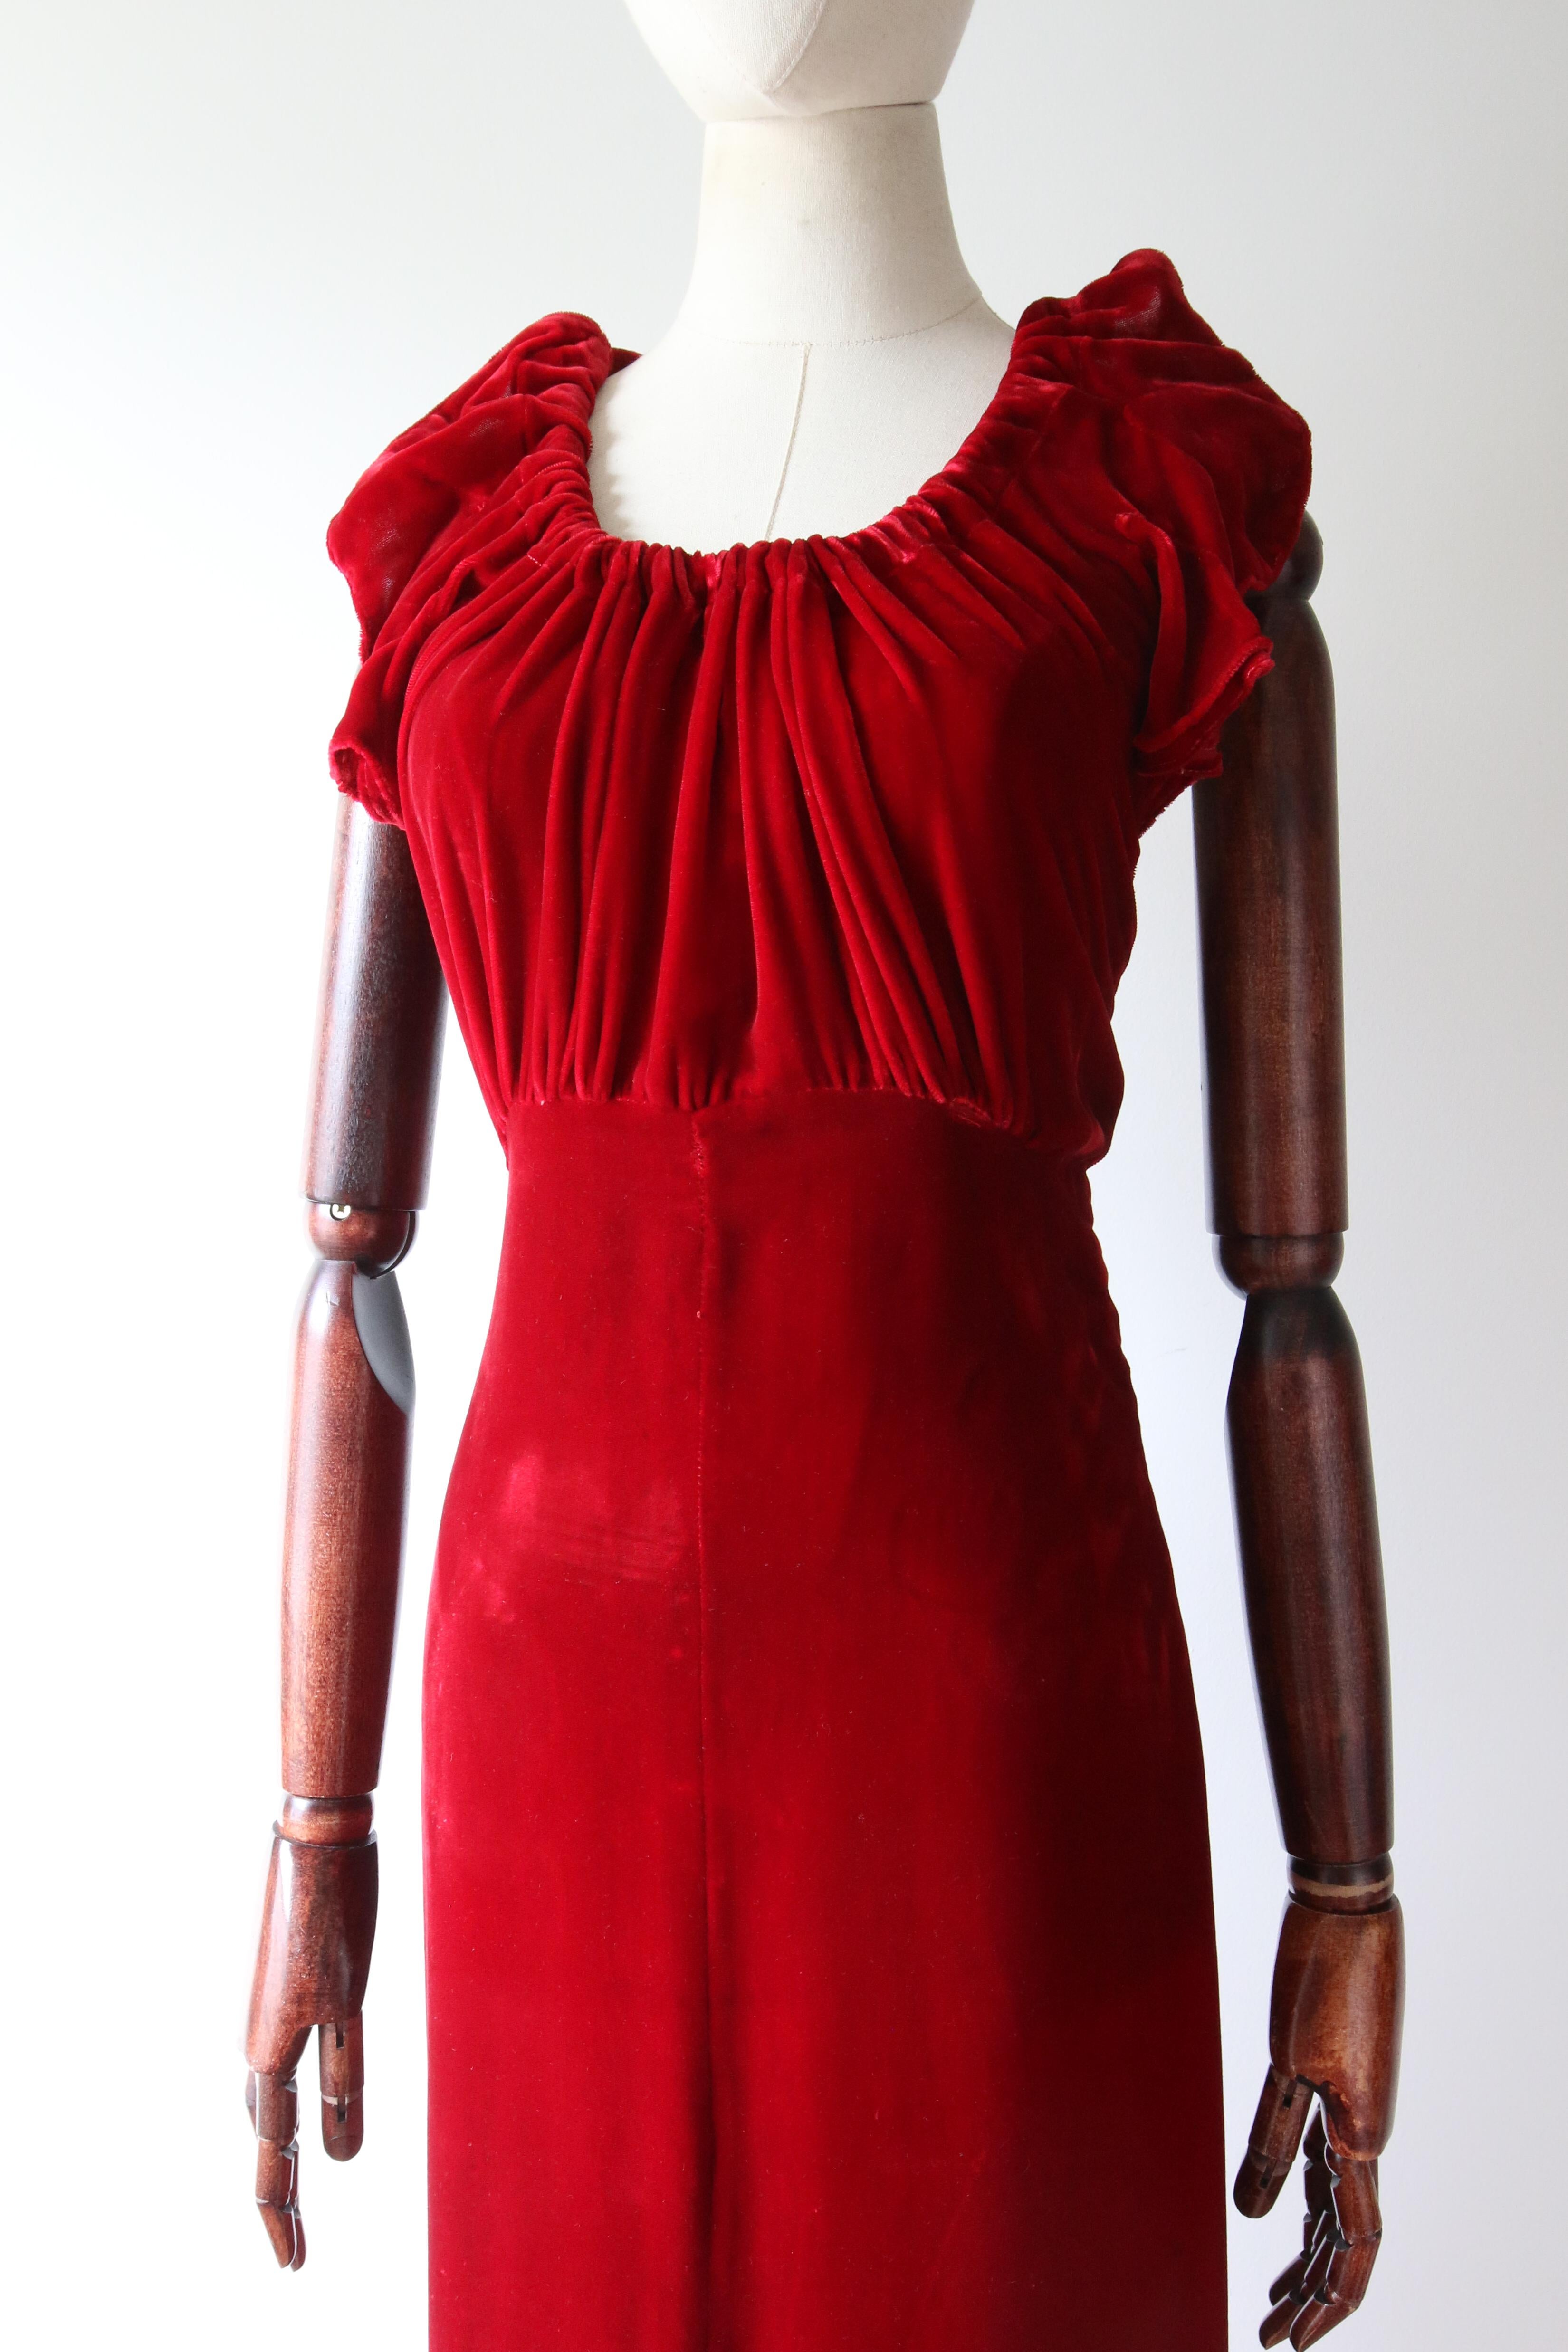 Vintage 1930's red velvet dress and jacket 1930's bias cut UK 6- 8 US 2-4 For Sale 2